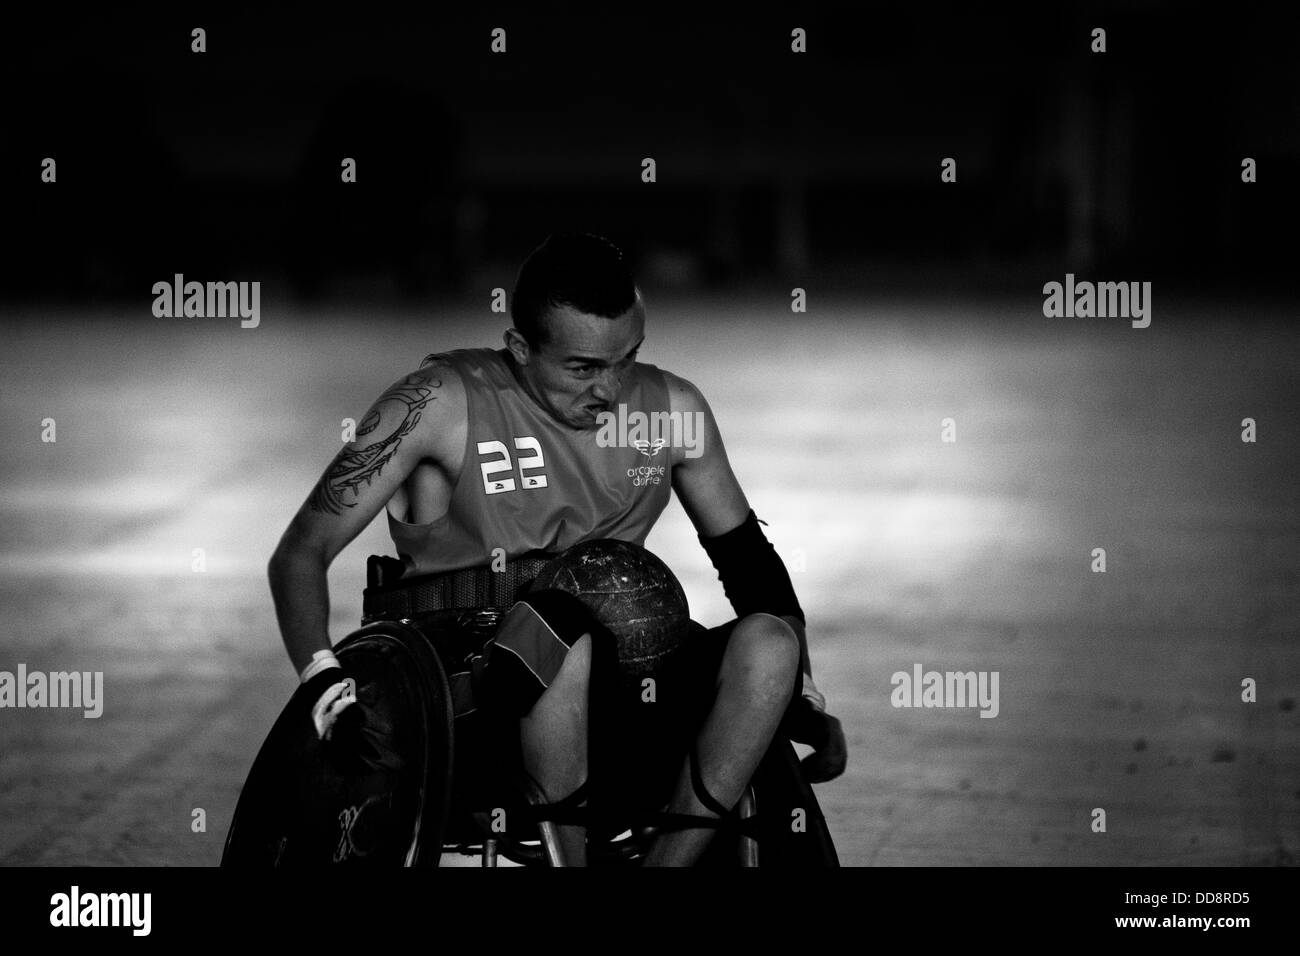 Un athlète handicapé Colombie, en action lors d'un match d'entraînement de rugby en fauteuil roulant à l'aréna à Bogota, Colombie. Banque D'Images